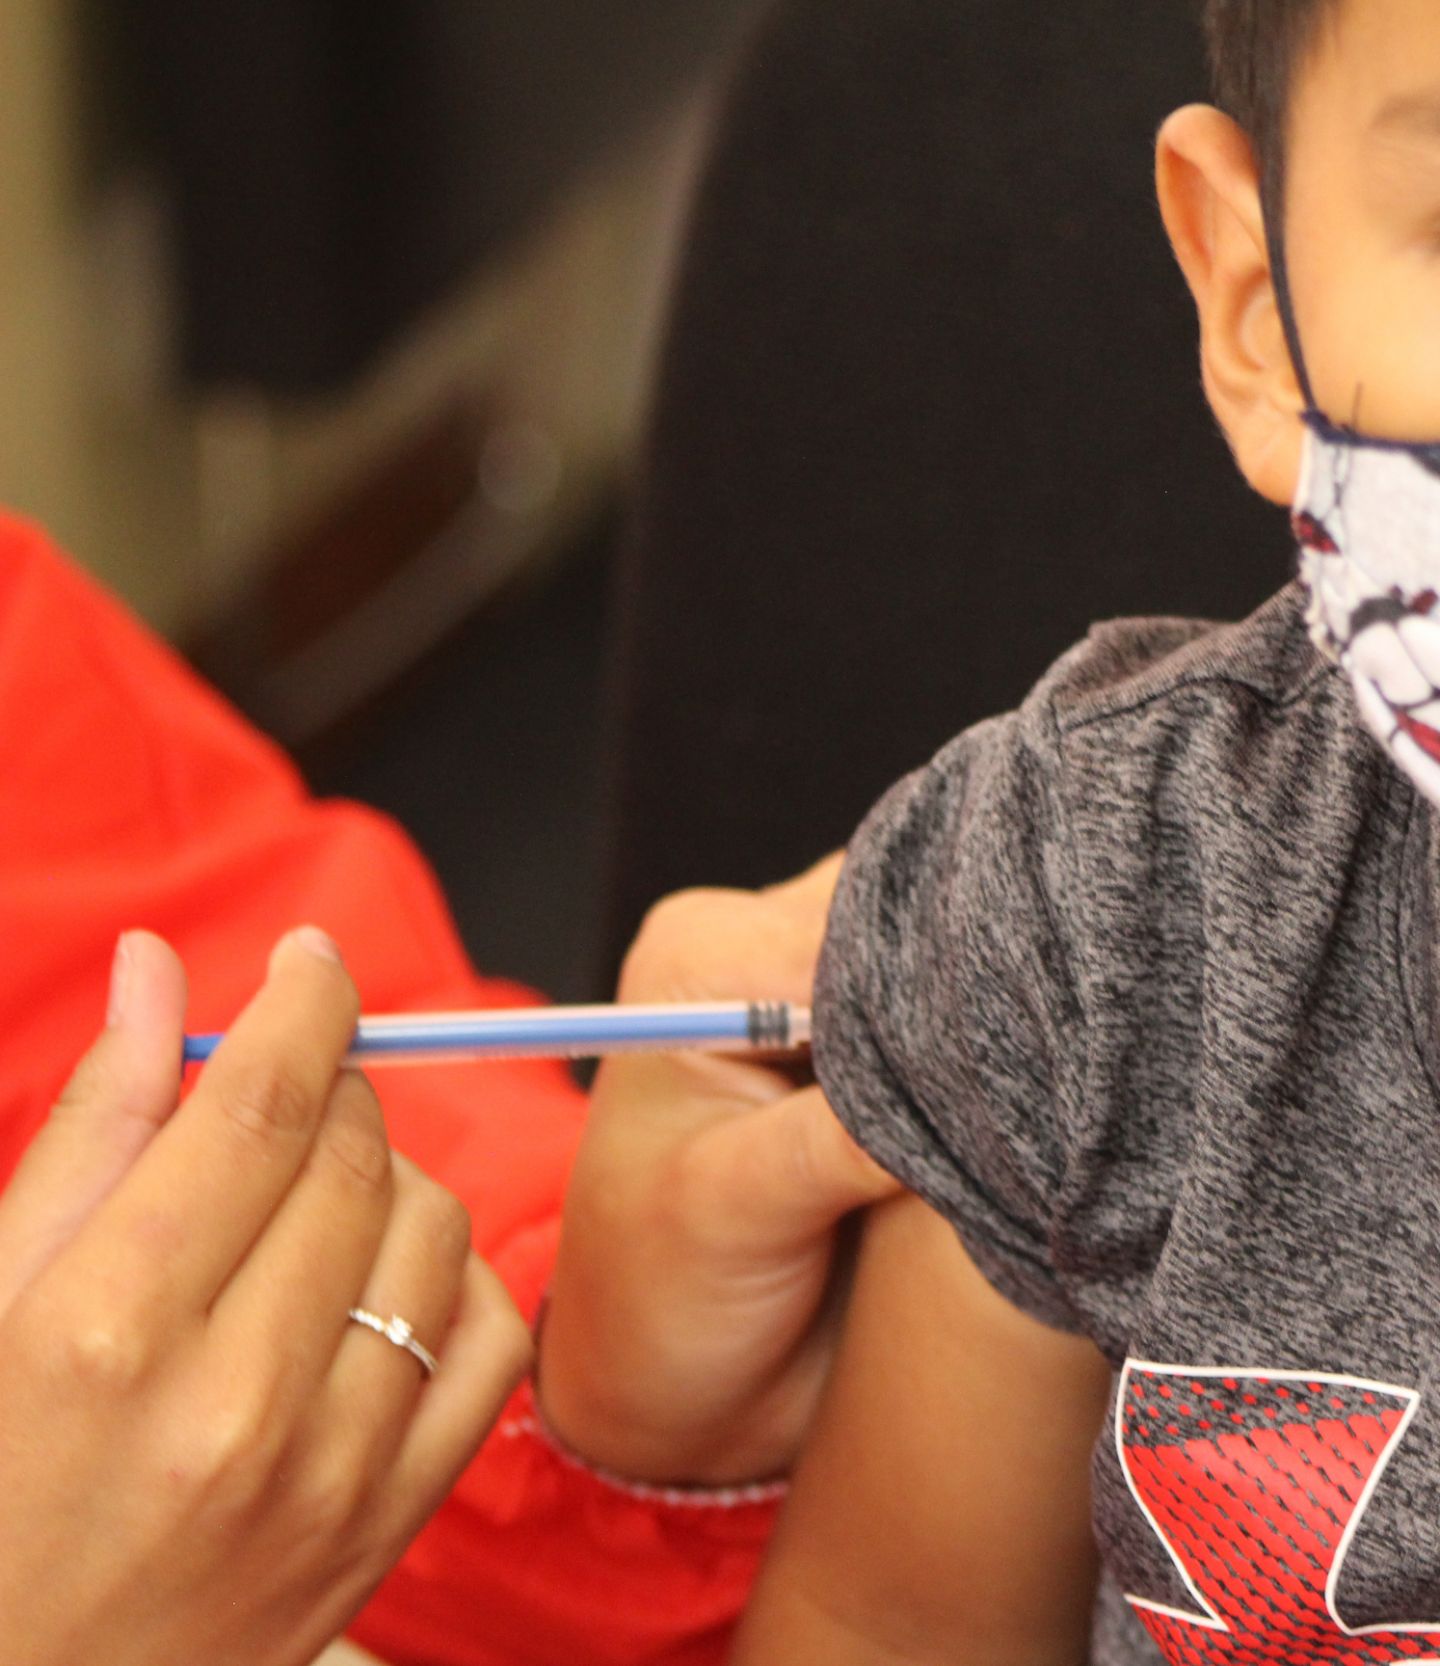 Dirección de Salud Municipal refuerza jornadas de vacunación para niños

